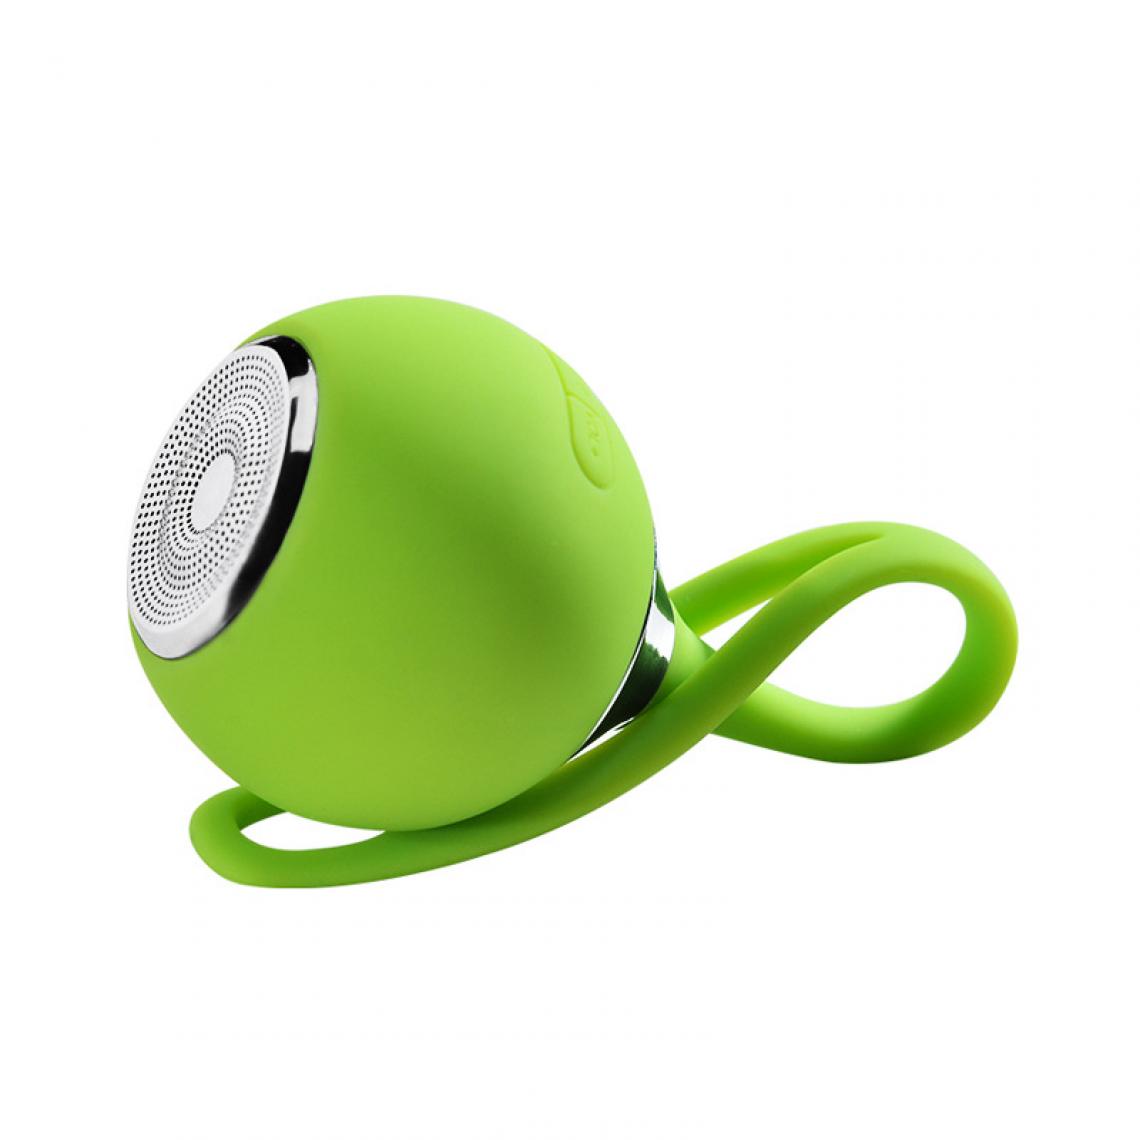 Universal - Haut-parleur portable mini étanche Bluetooth TF Card Haut-parleur stéréo sans fil extérieur HIFI vélo moto lecteur de musique MP3 | haut-parleurs portables (vert) - Hauts-parleurs